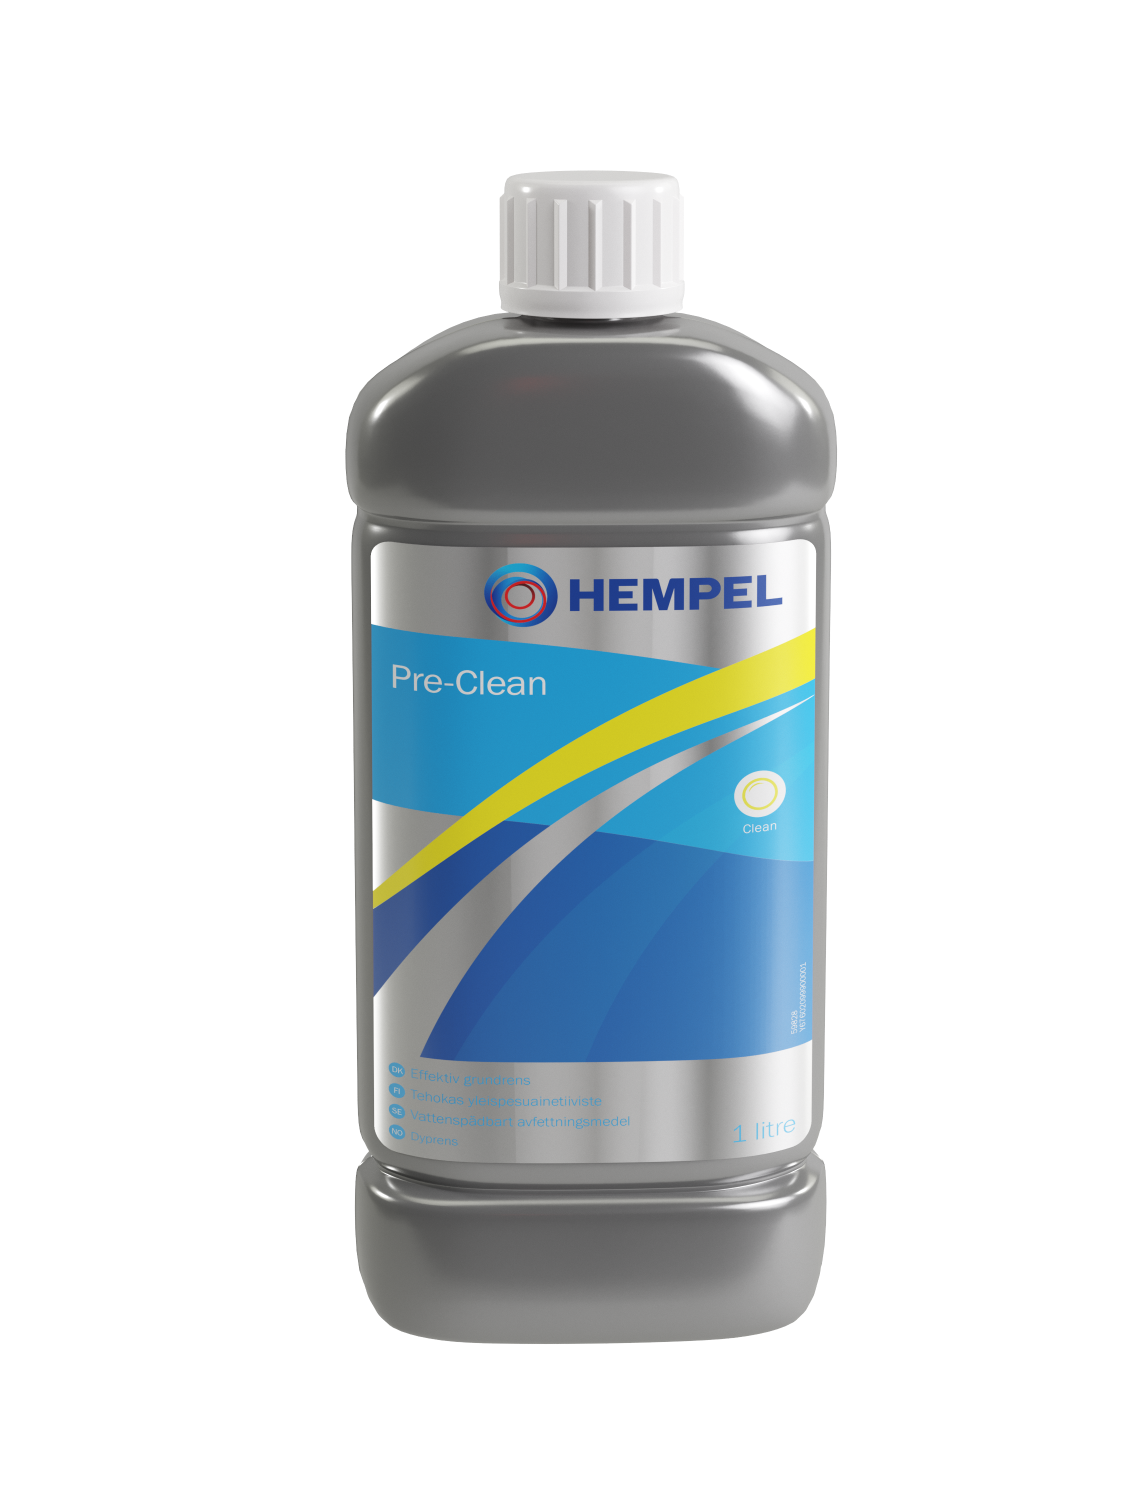 Hempel Pre-Clean 1 liter